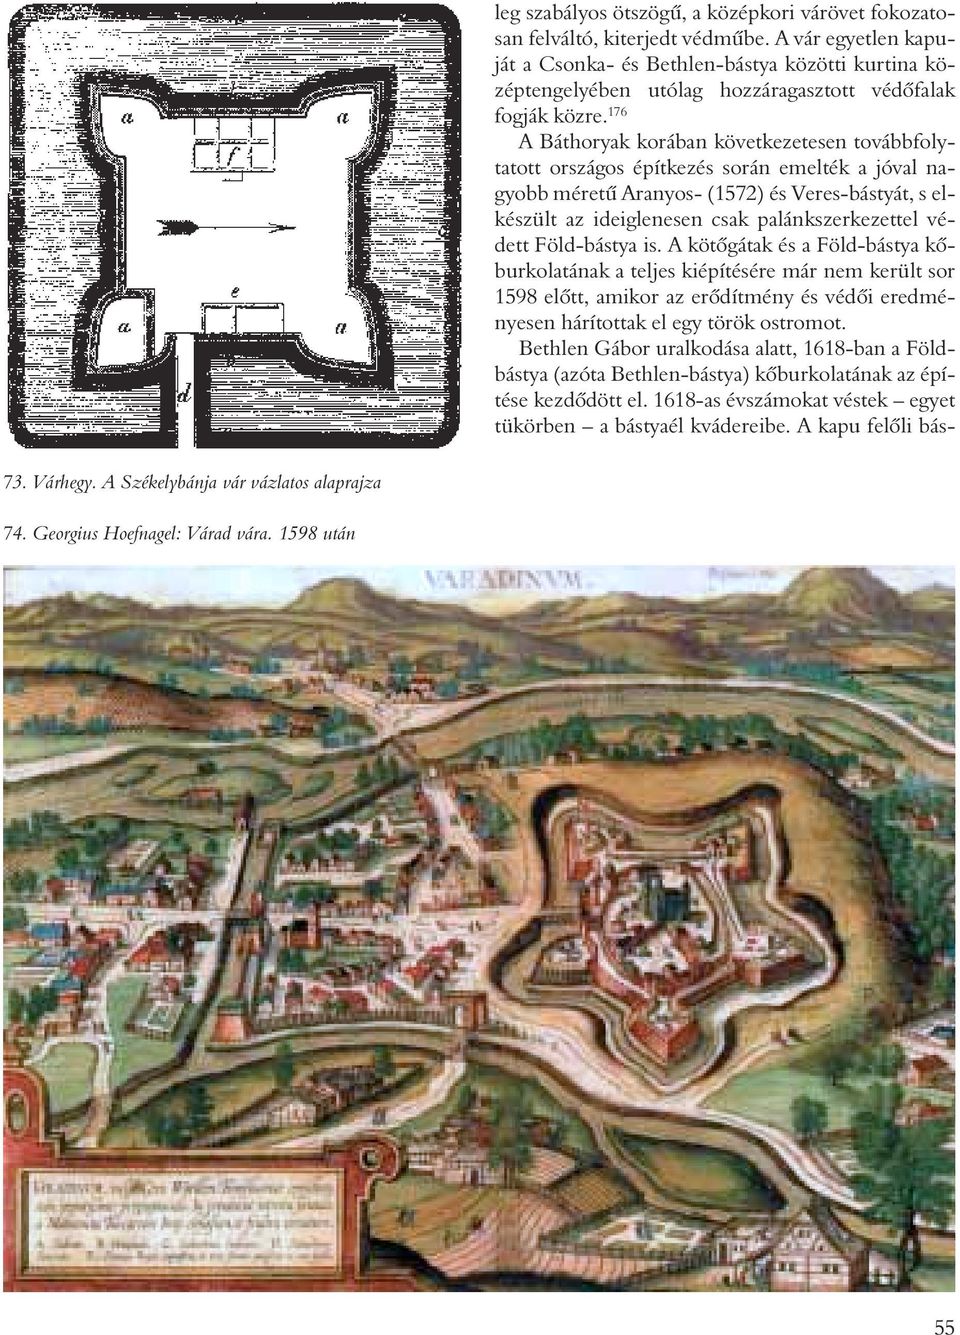 176 A Báthoryak korában következetesen továbbfolytatott országos építkezés során emelték a jóval nagyobb méretû Aranyos- (1572) és Veres-bástyát, s elkészült az ideiglenesen csak palánkszerkezettel